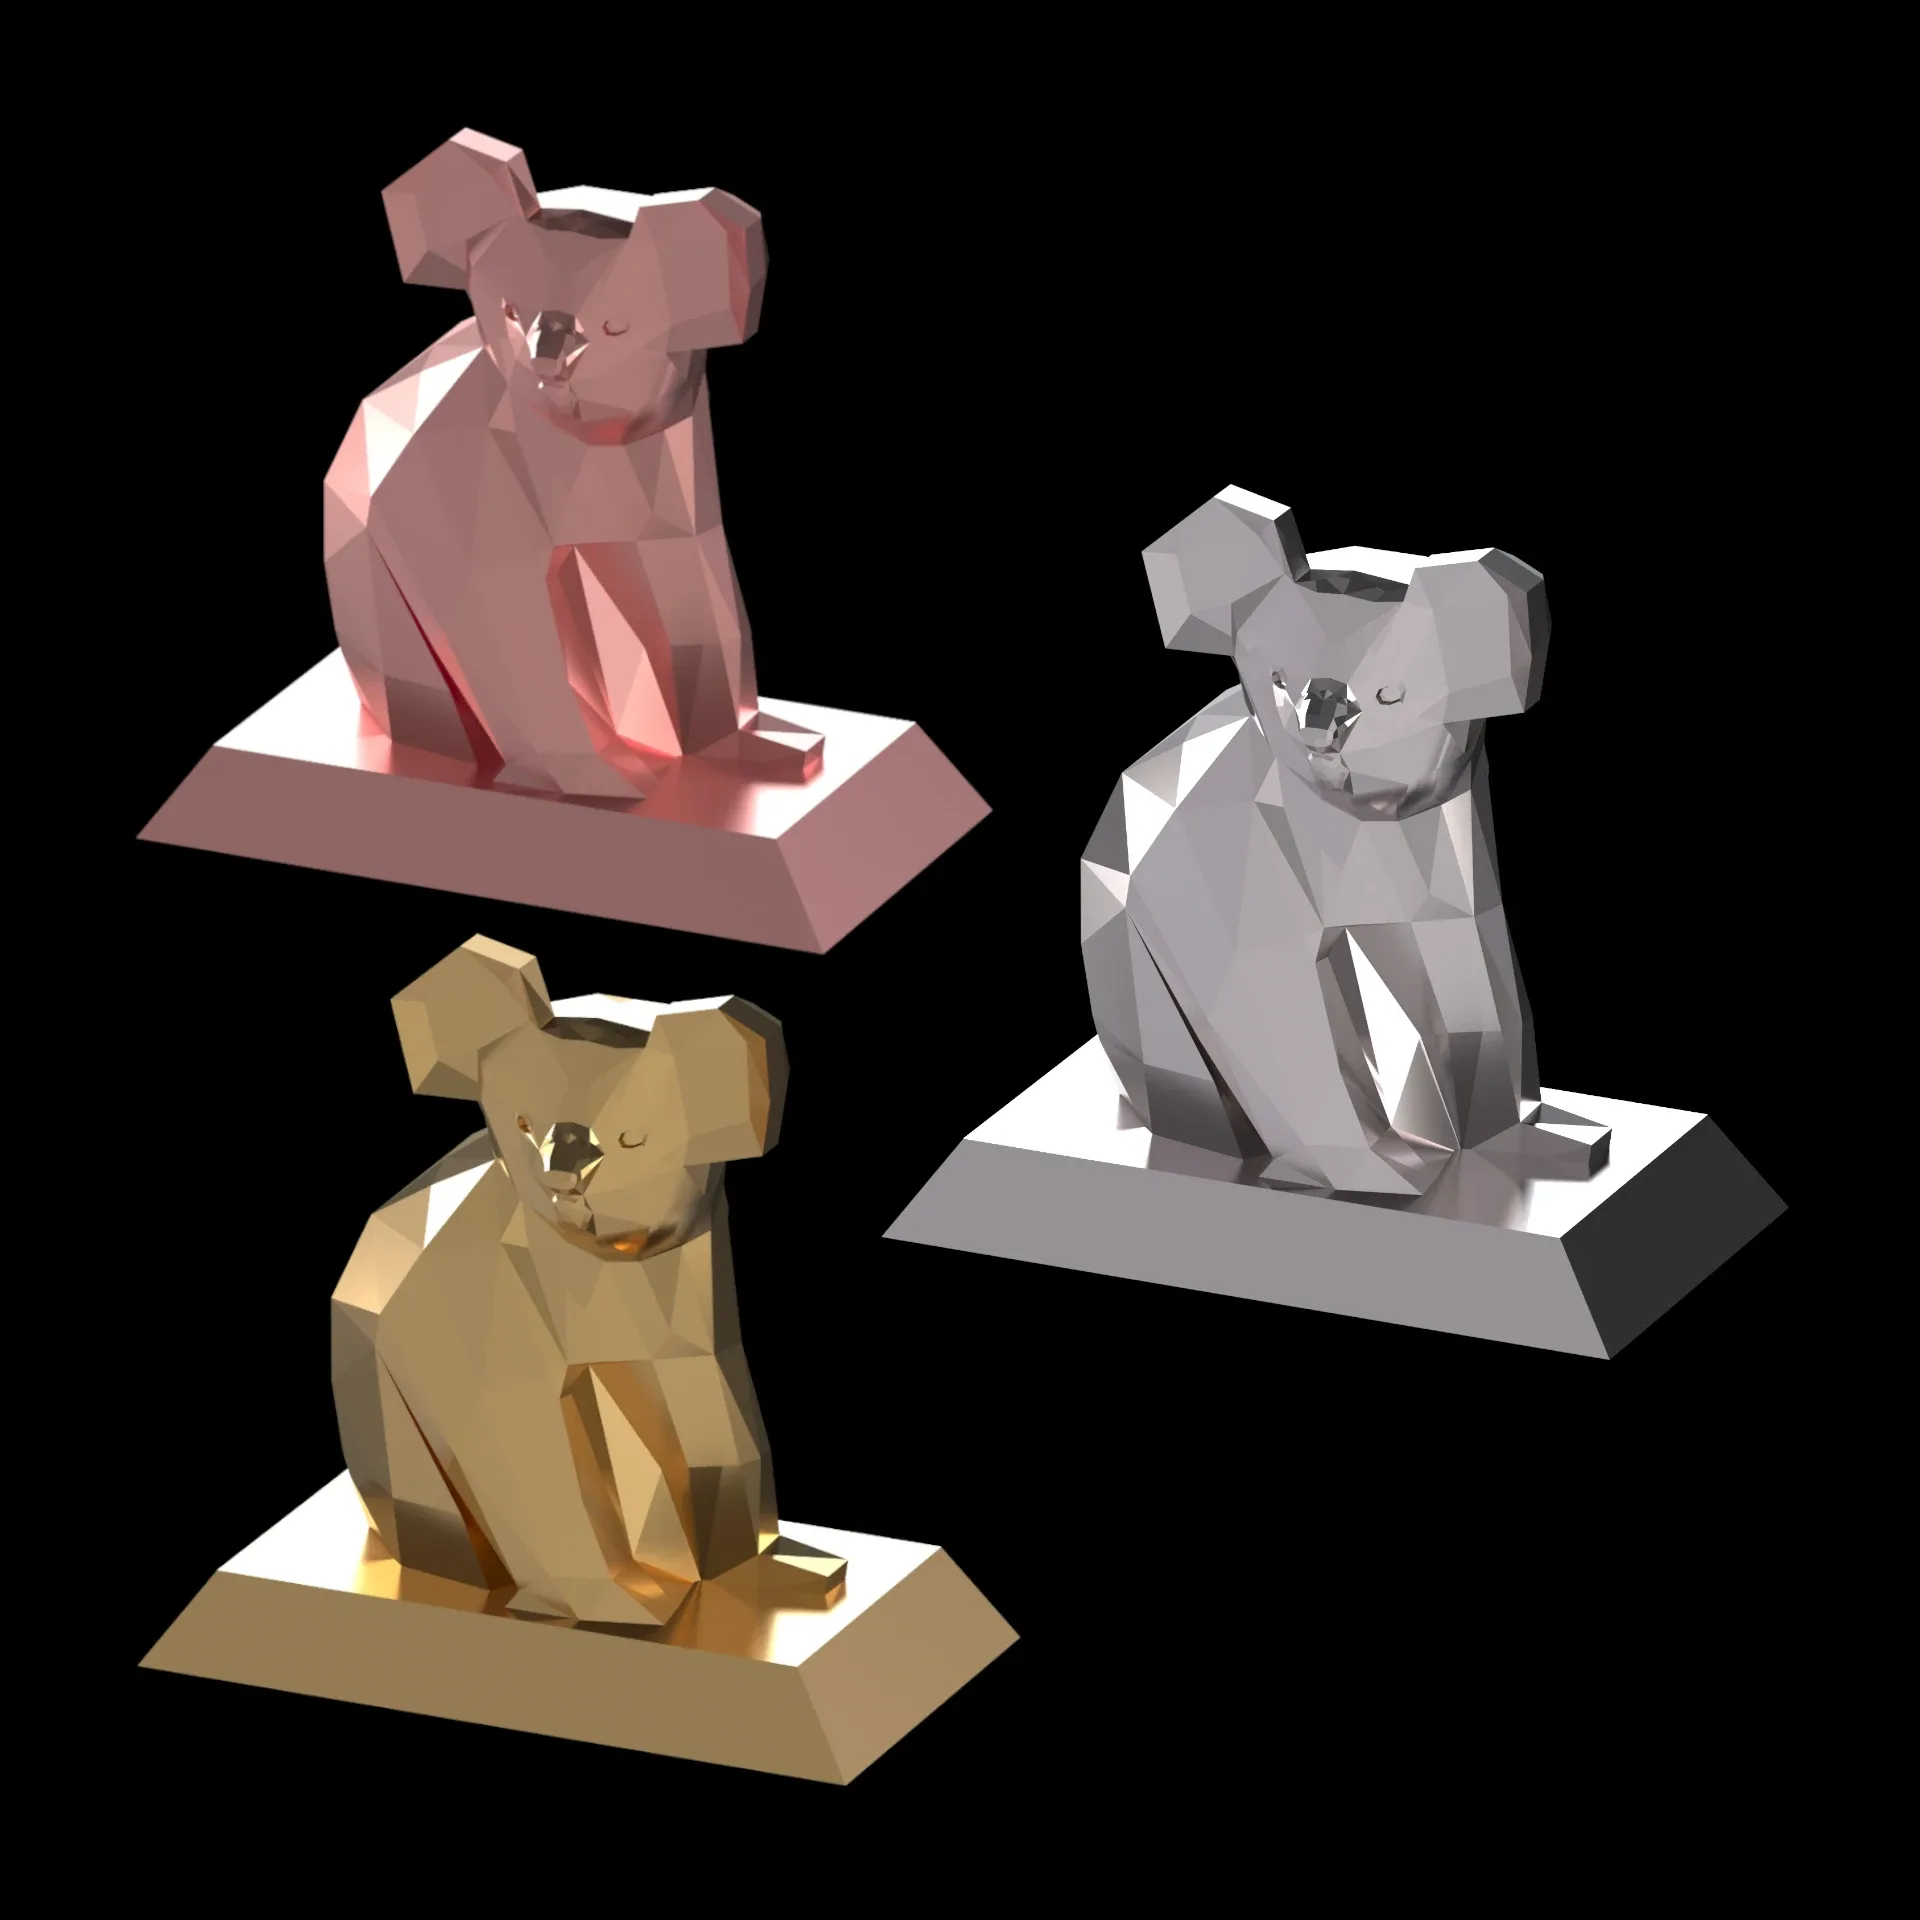 Koala bear sculptrure 3Dmodel lowpoly